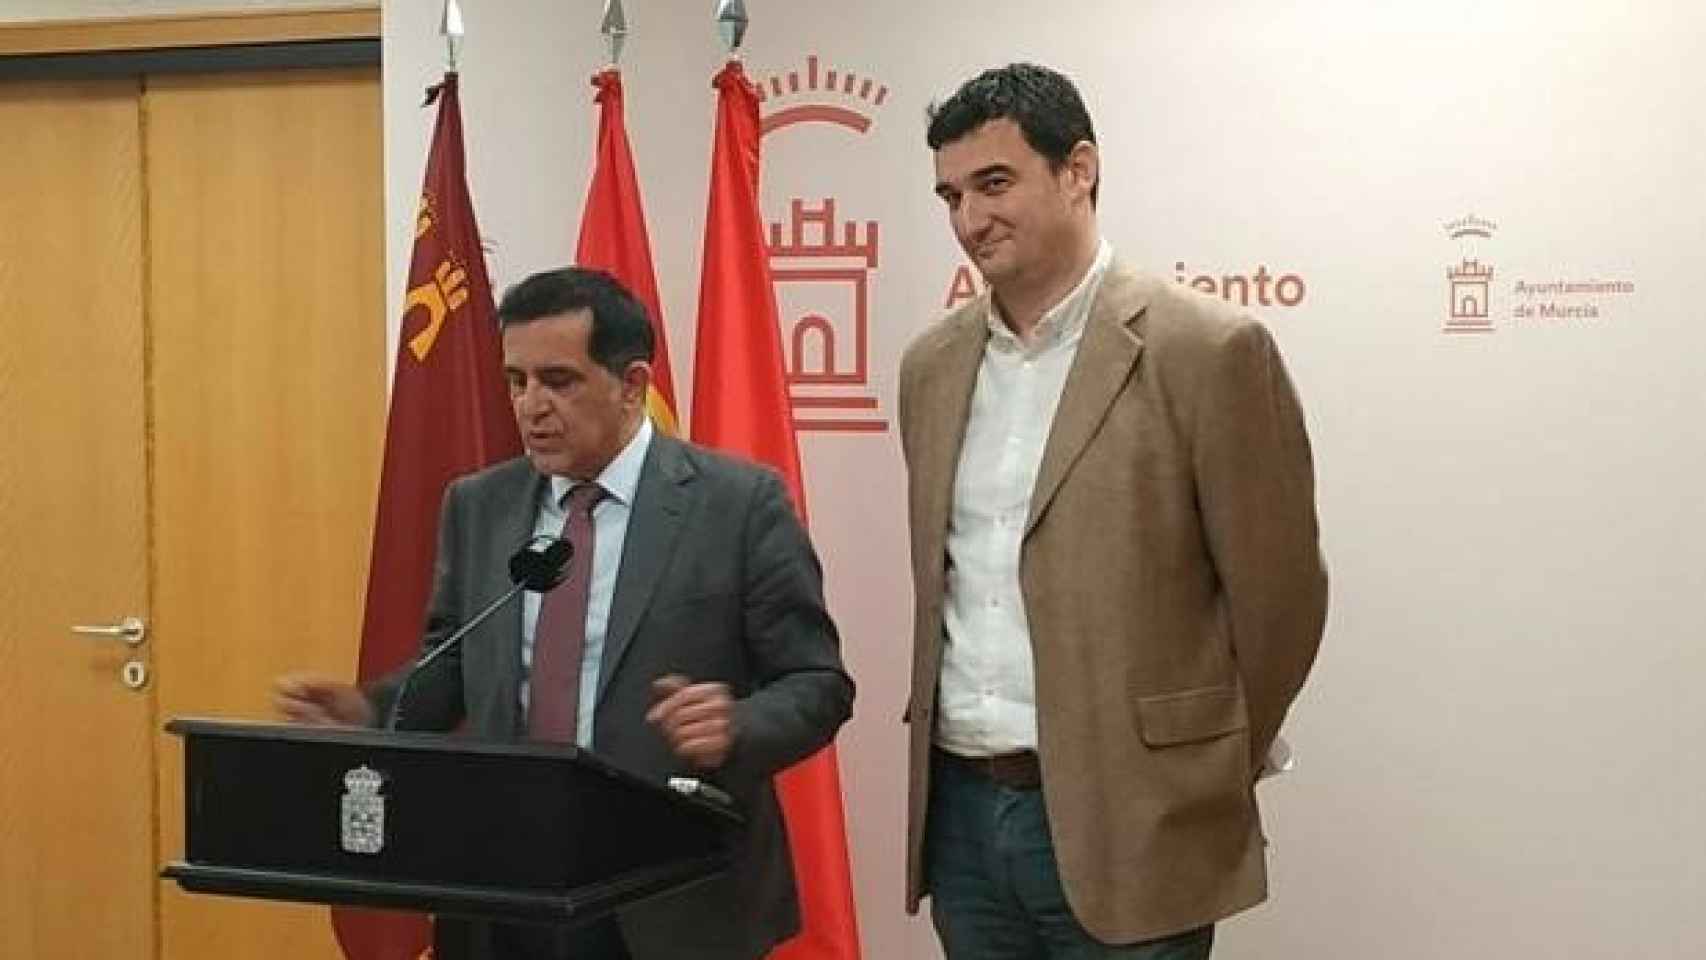 El alcalde de Murcia y cabeza de lista del PSOE, José Antonio Serrano, junto al entonces portavoz de Podemos en el Ayuntamiento, Ginés Ruiz.